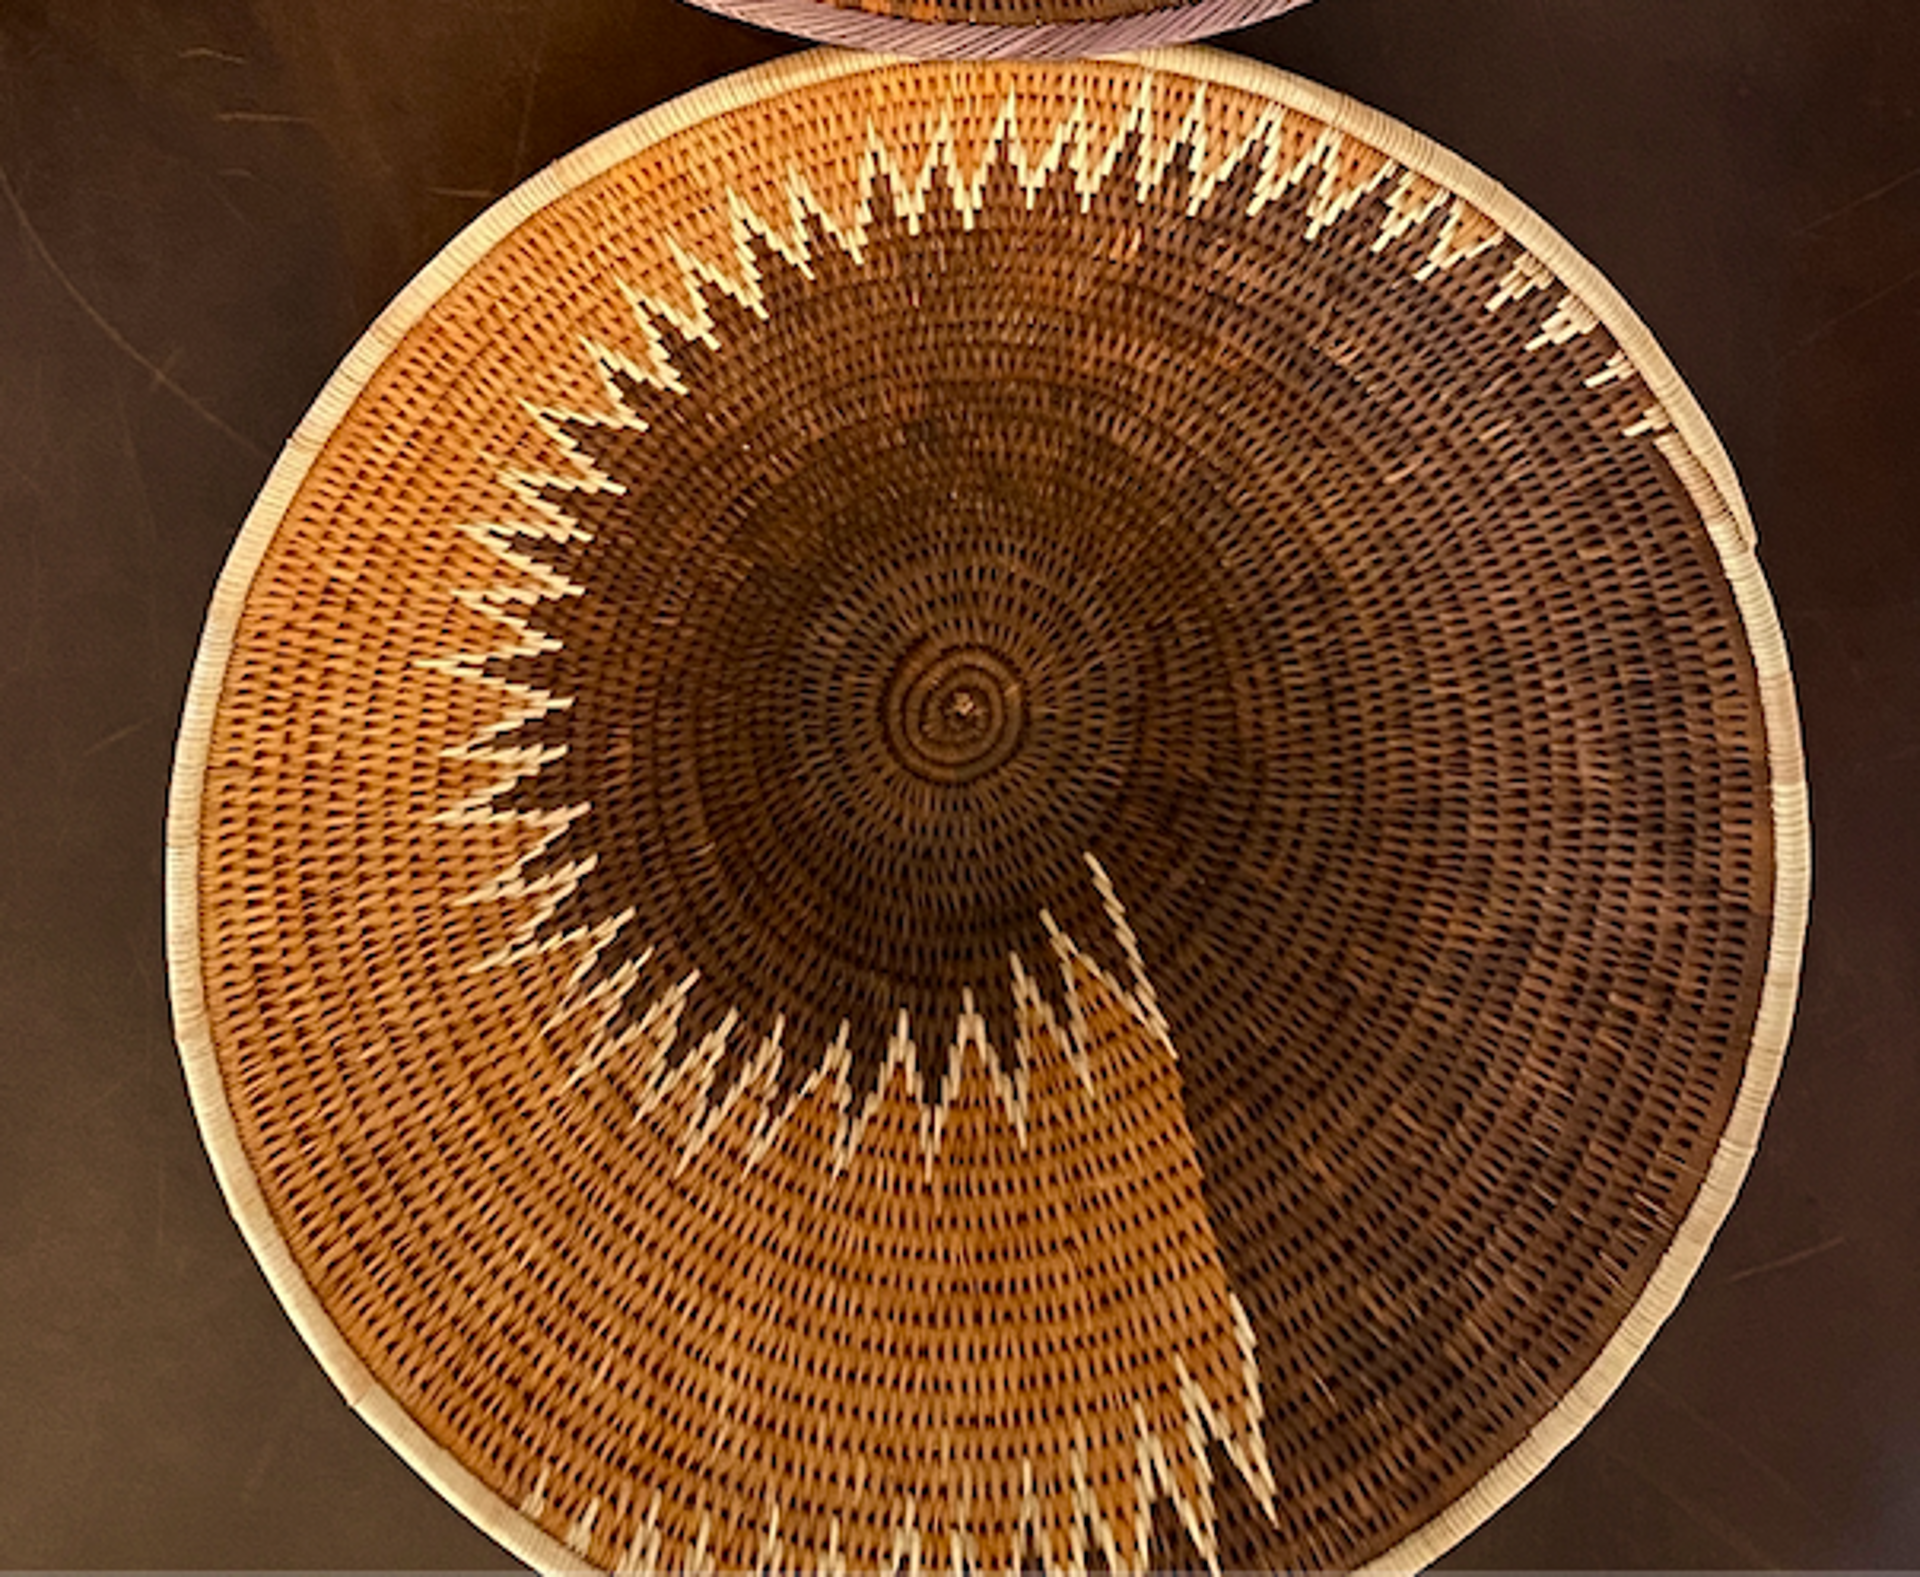 Kavango Open Palm Basket by Omba Arts